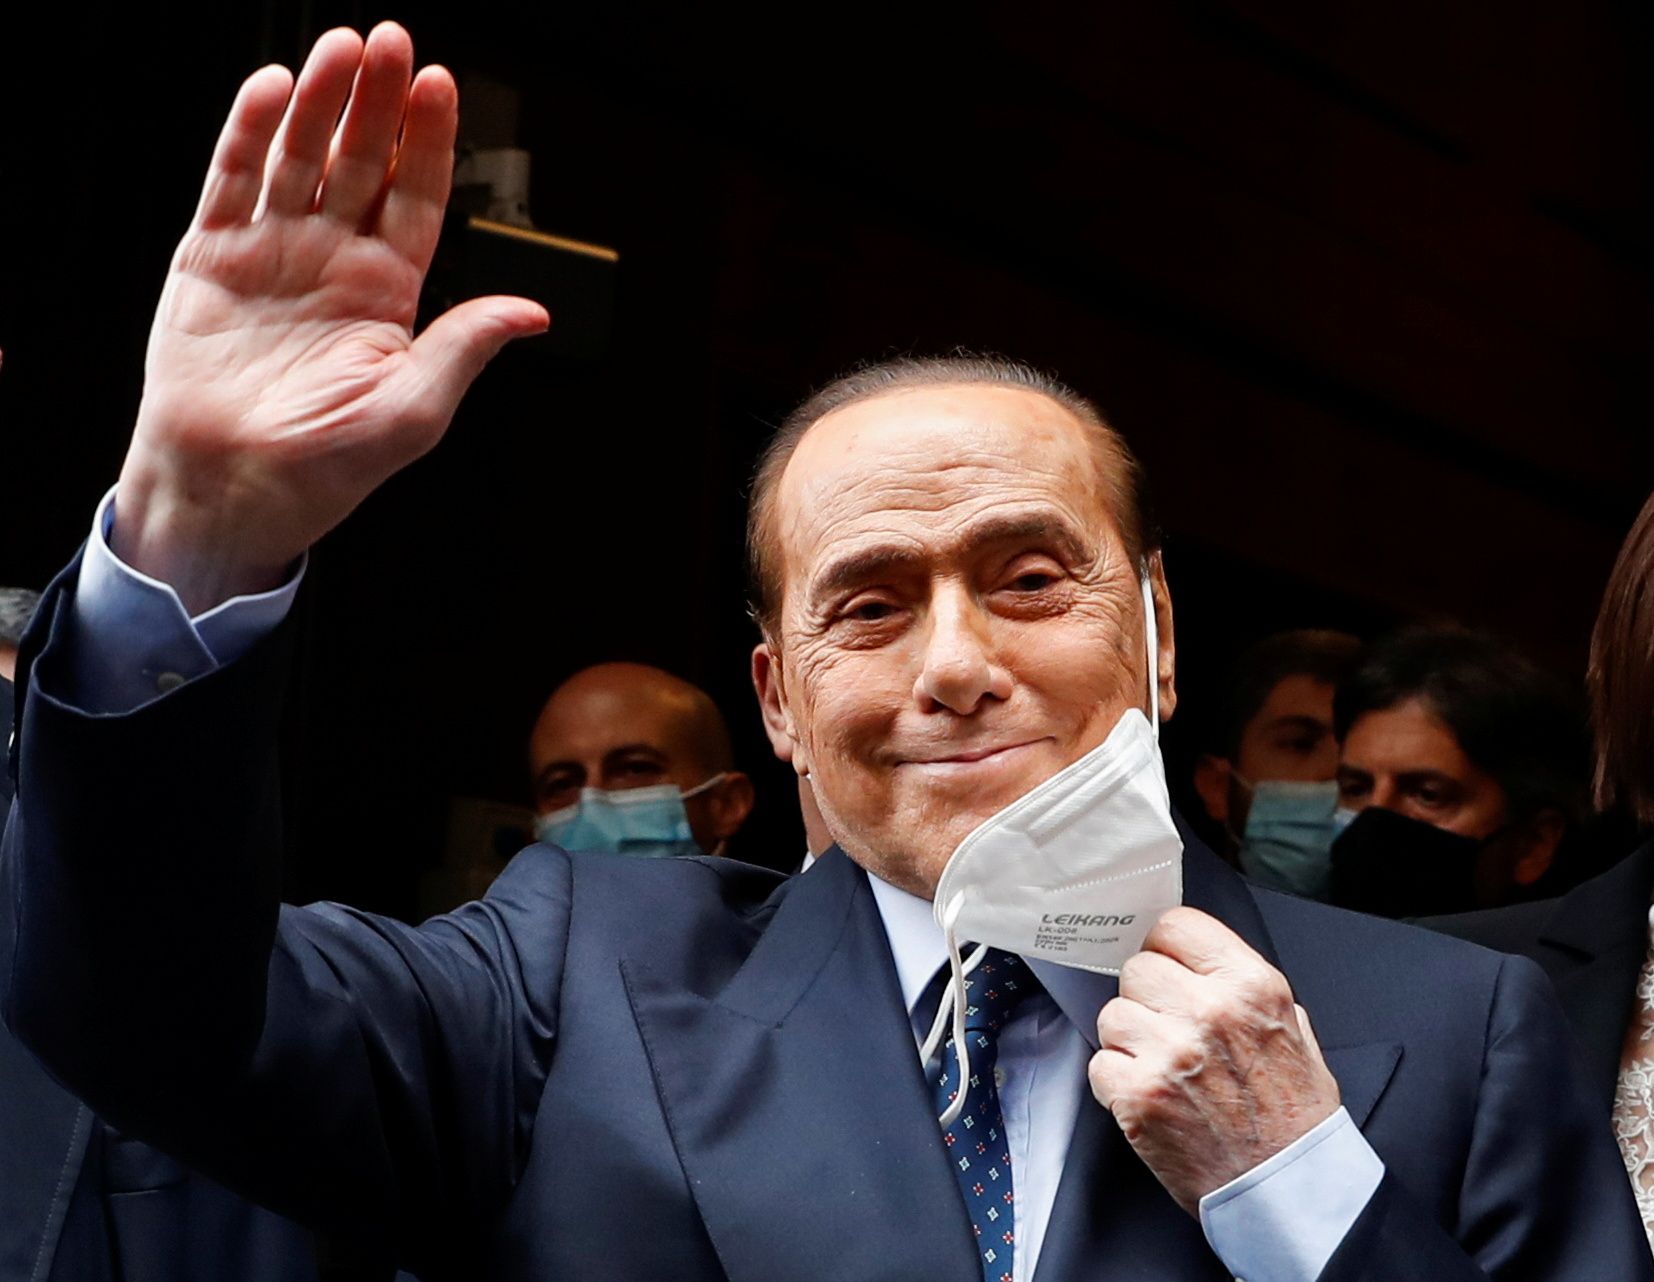 Il tribunale ha assolto Berlusconi dal caso di addobbi floreali e corruzione di testimoni